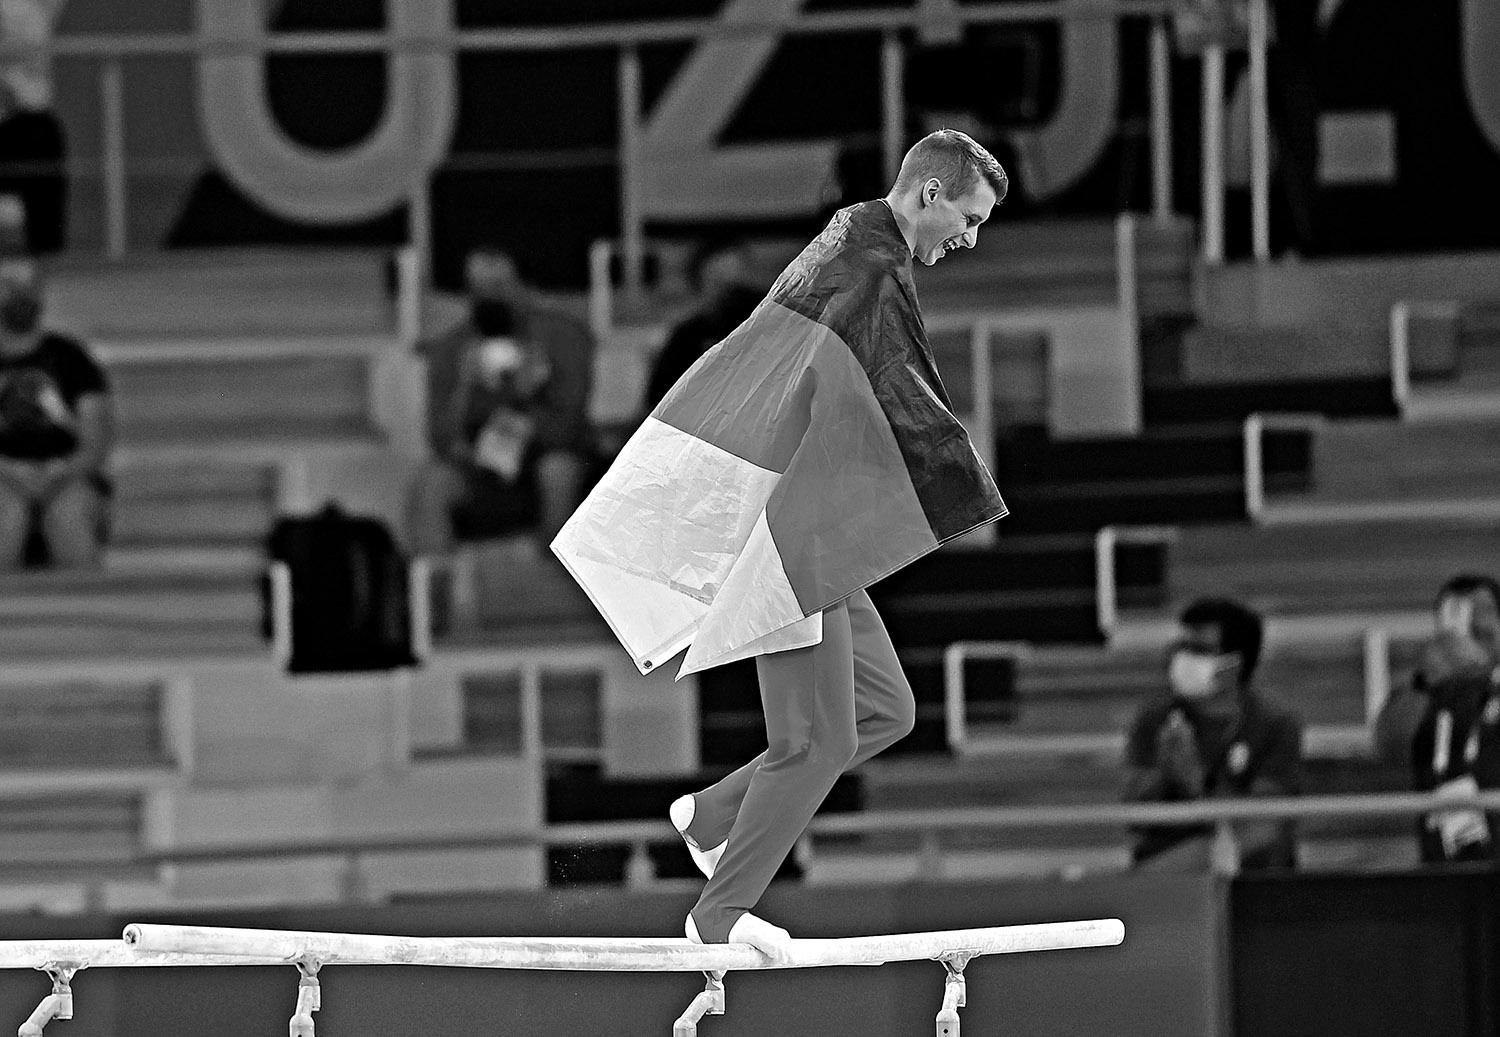 SATISFACCIÓN GERMANA. El especialista en barras paralelas alemán Lukas Dauser celebra satisfecho haber ganado la medalla de plata en gimnasia artística en el centro Ariake.